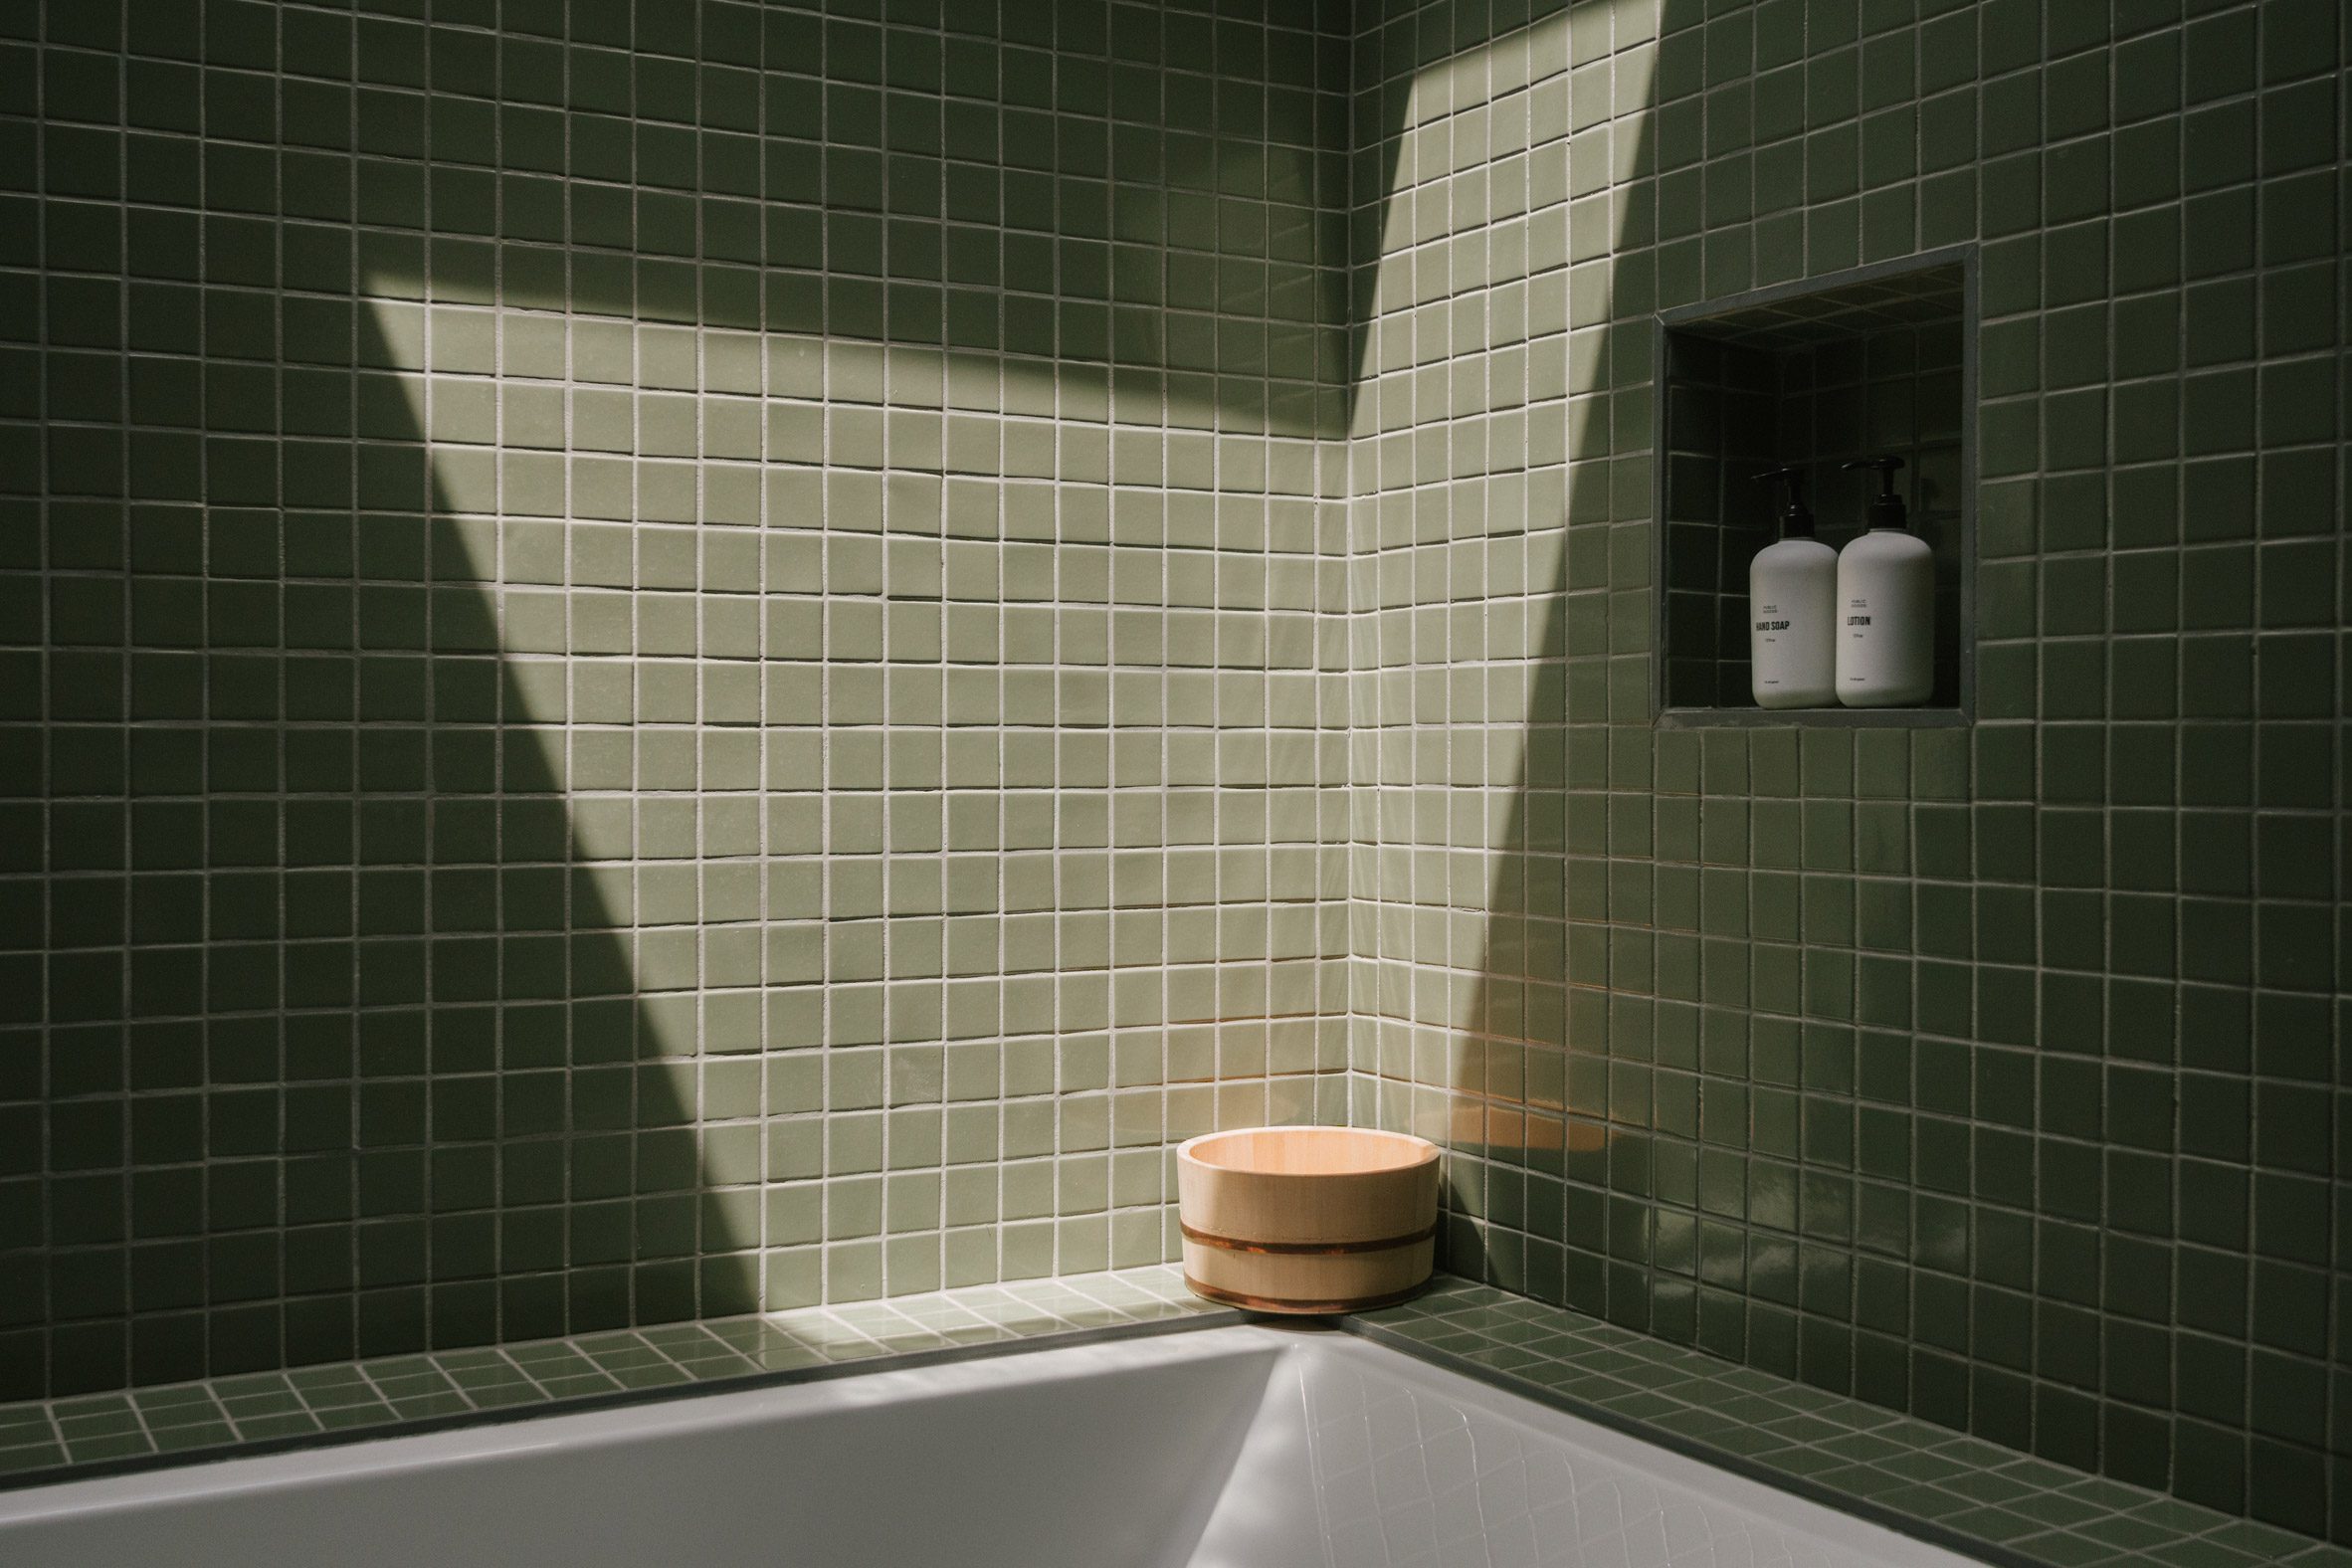 Zen Den has bathrooms with tiles from Fireclay